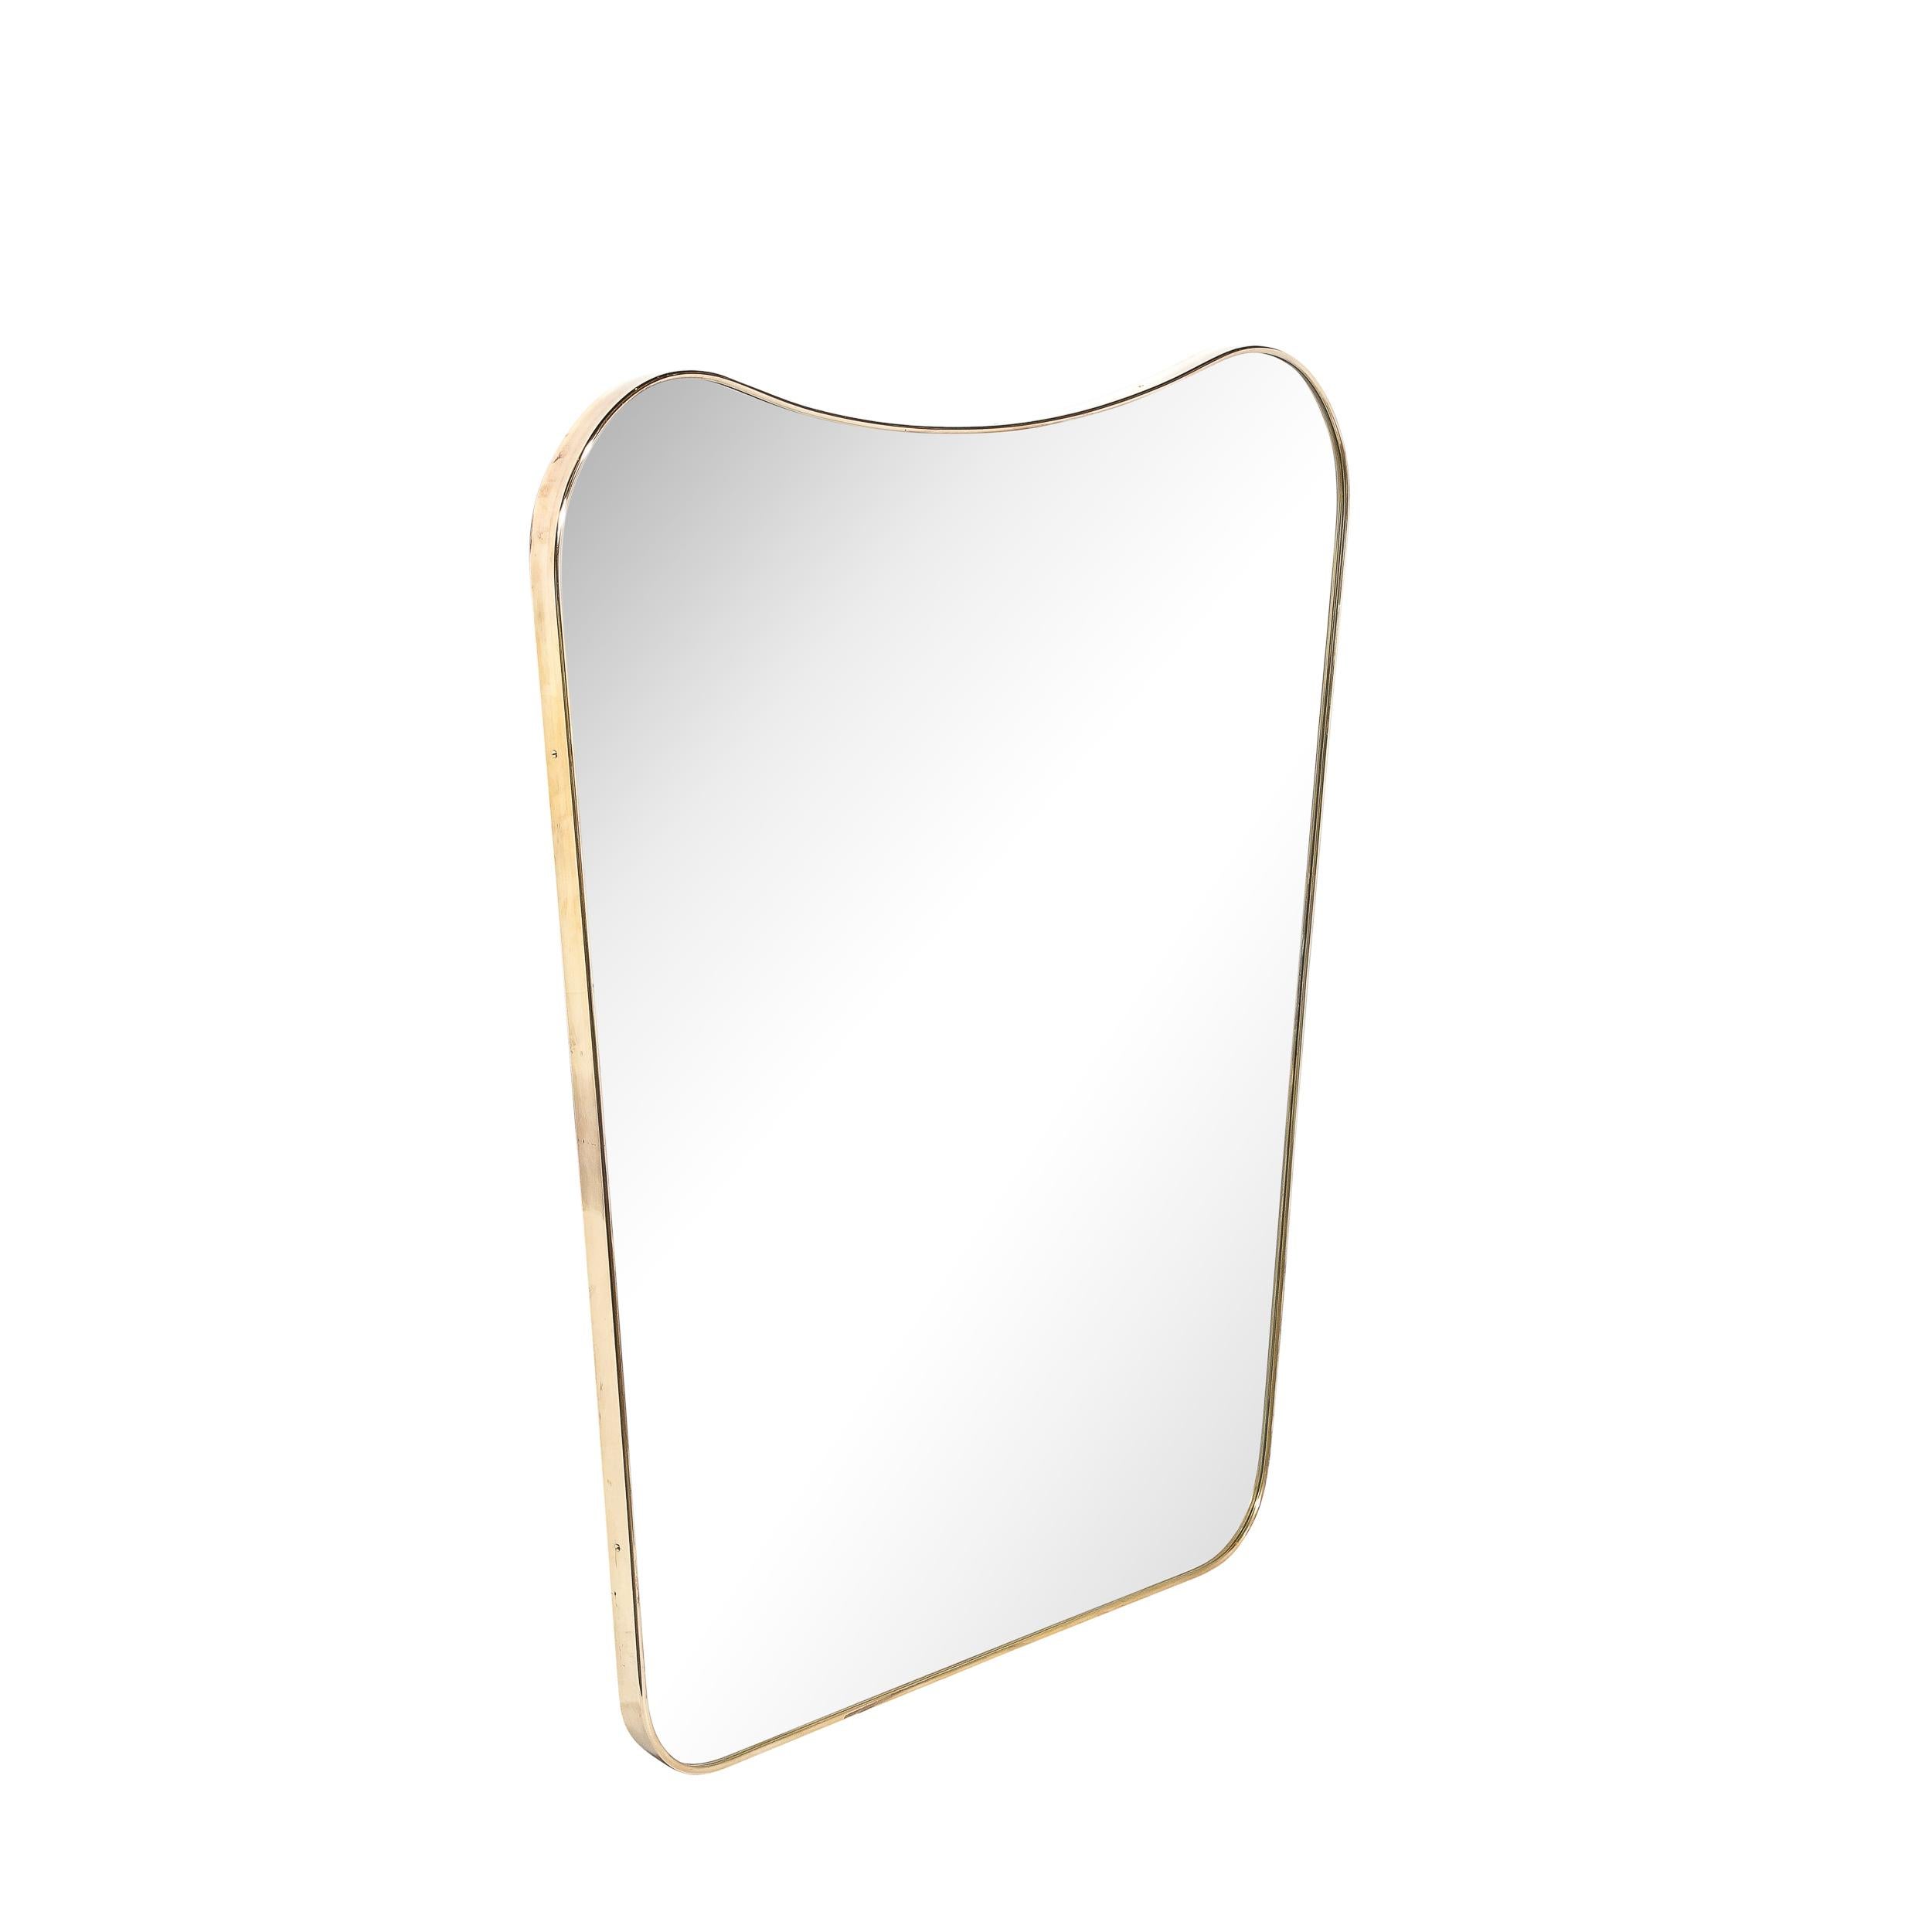 Ce ravissant miroir en forme de bouclier en laiton poli, de style moderniste du milieu du siècle, provient d'Italie, vers 1950. Il présente un profil curviligne en forme d'écu héraldique avec des coins supérieurs surélevés et arrondis, bien